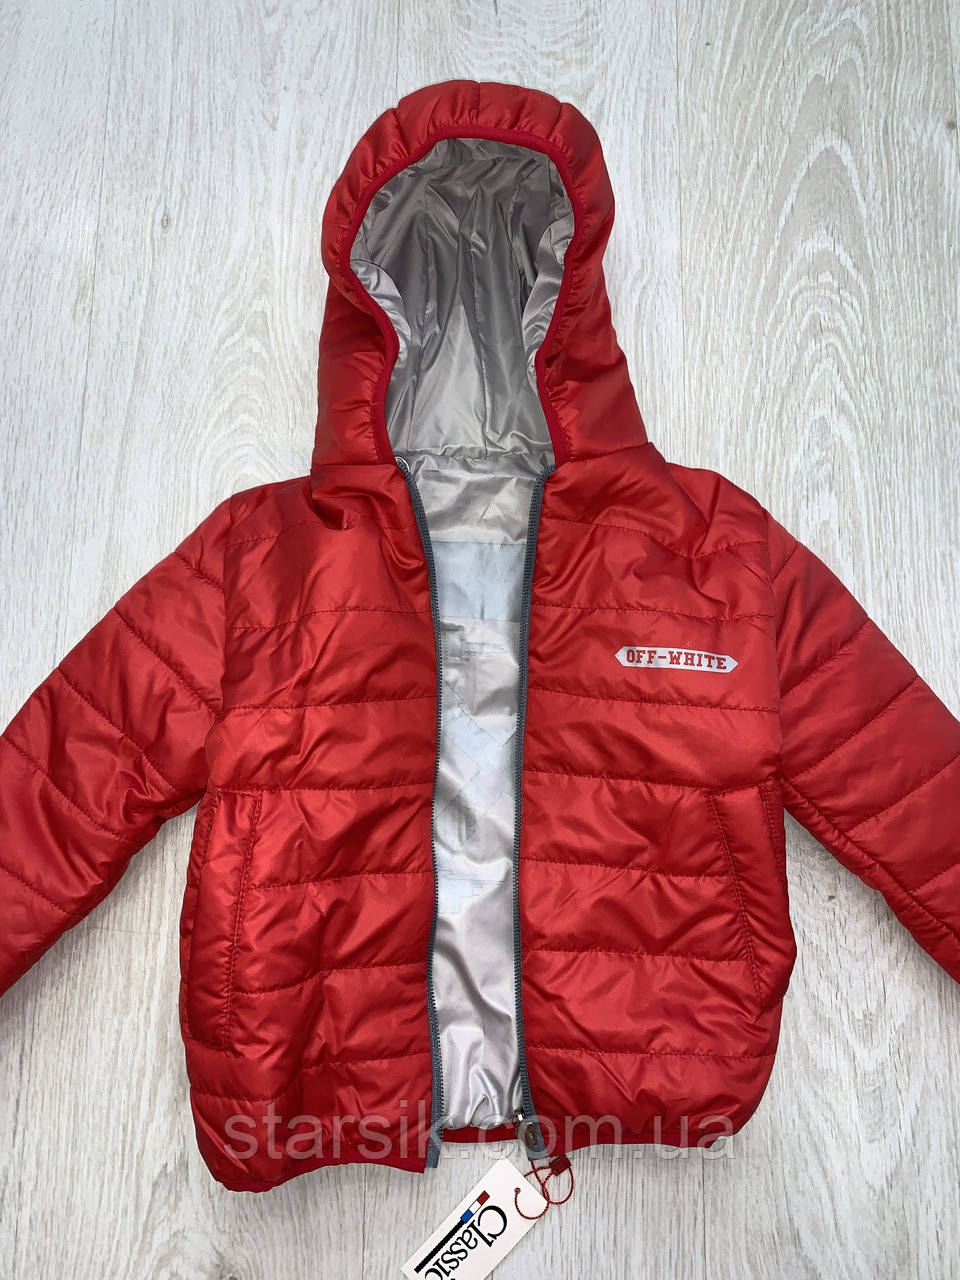 

Куртка двухсторонняя для мальчиков, Турция, арт. 9201, 104-110 см, Красный